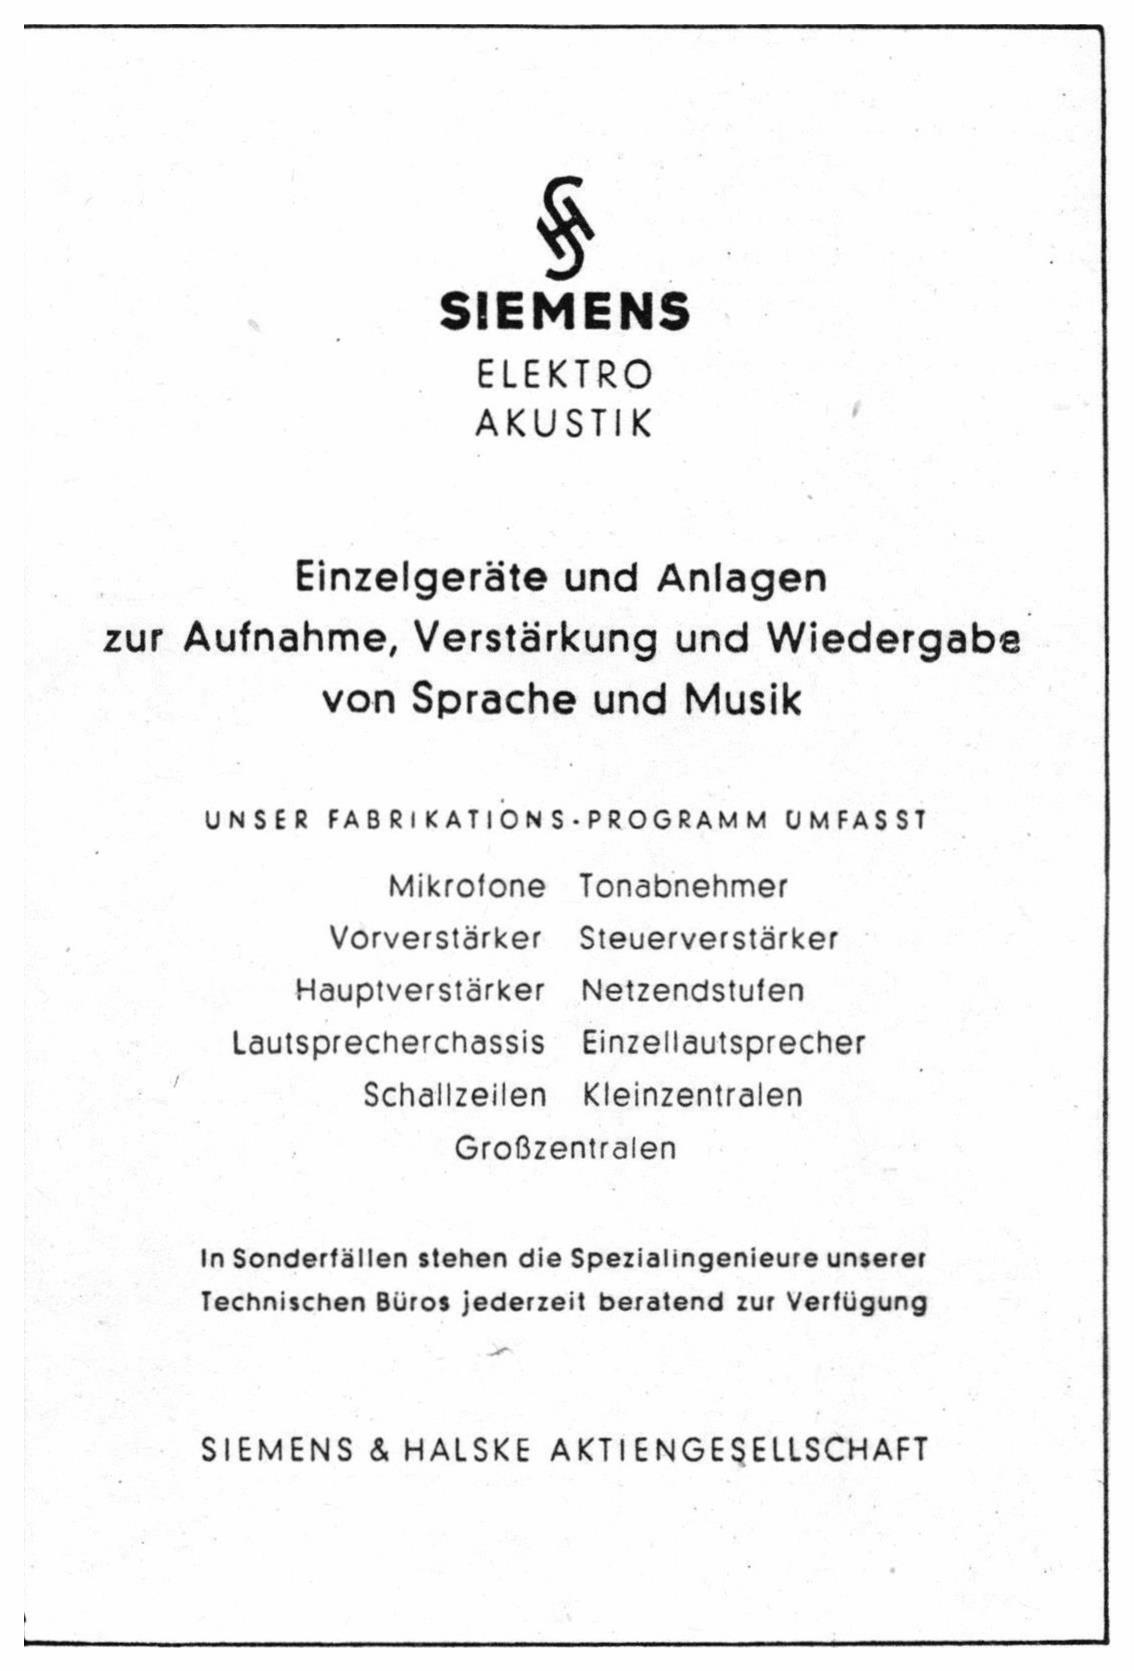 Siemens 1949 01.jpg